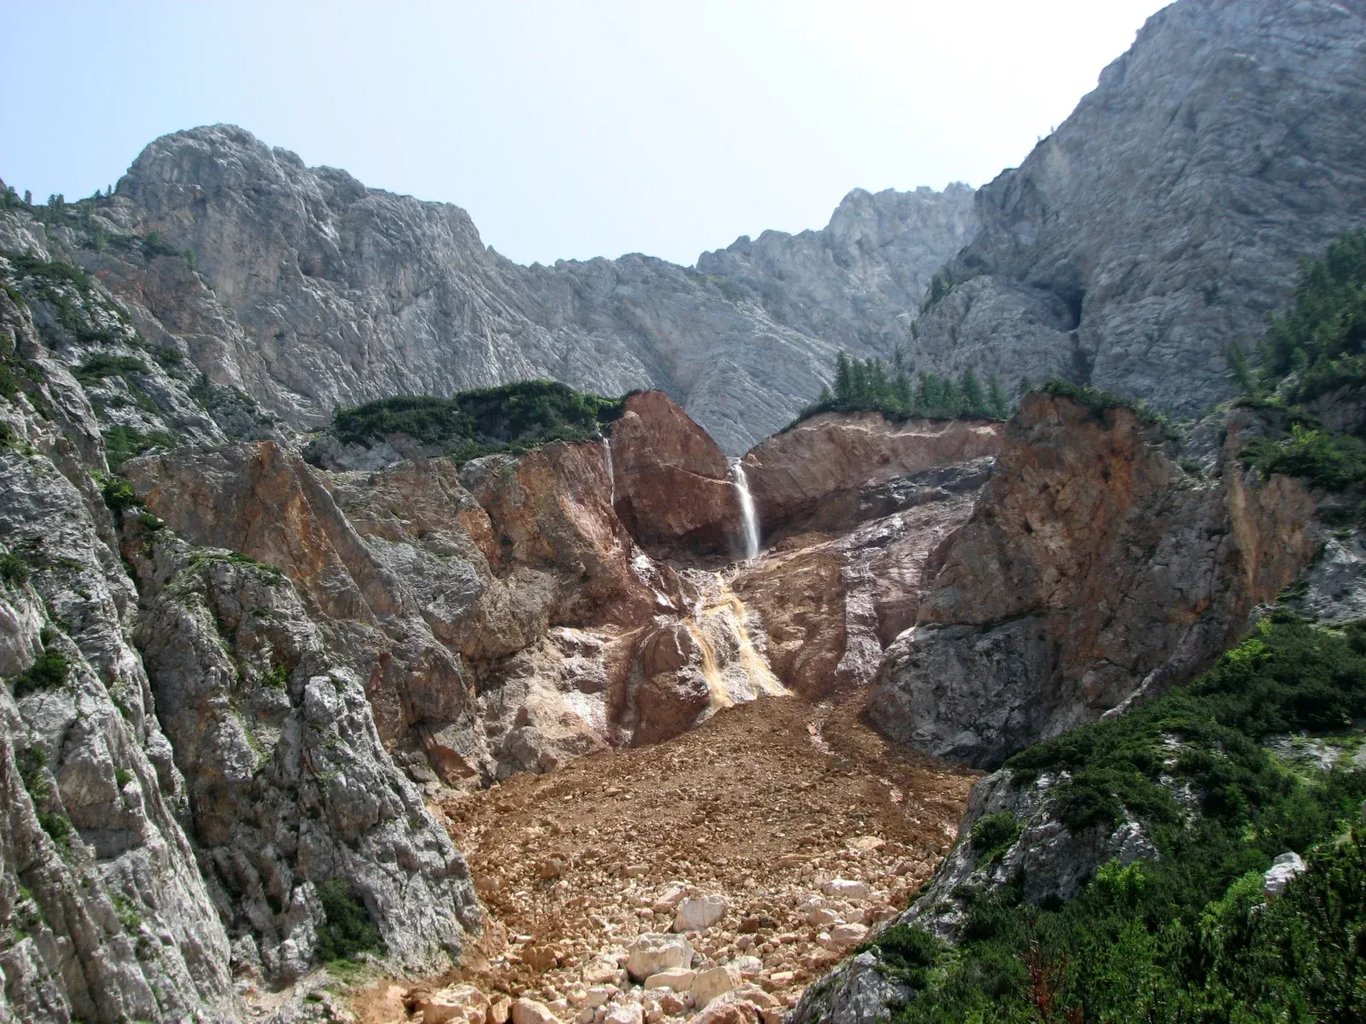 Cedca vízesés (Slap Čedca), Szlovénia eltűnt vízesése